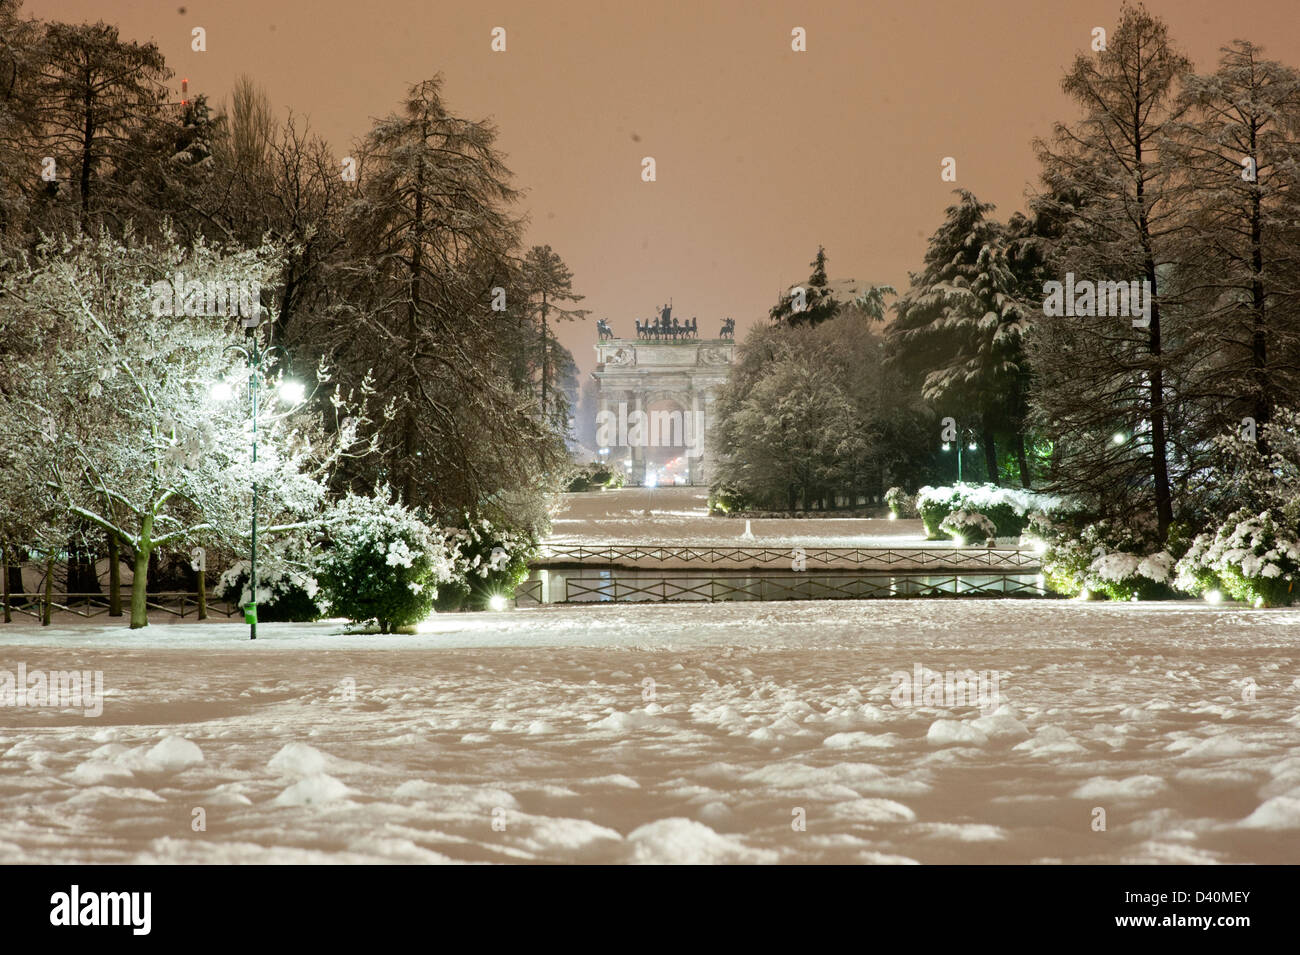 Arco della pace, in Parco Sempione with snow. Stock Photo